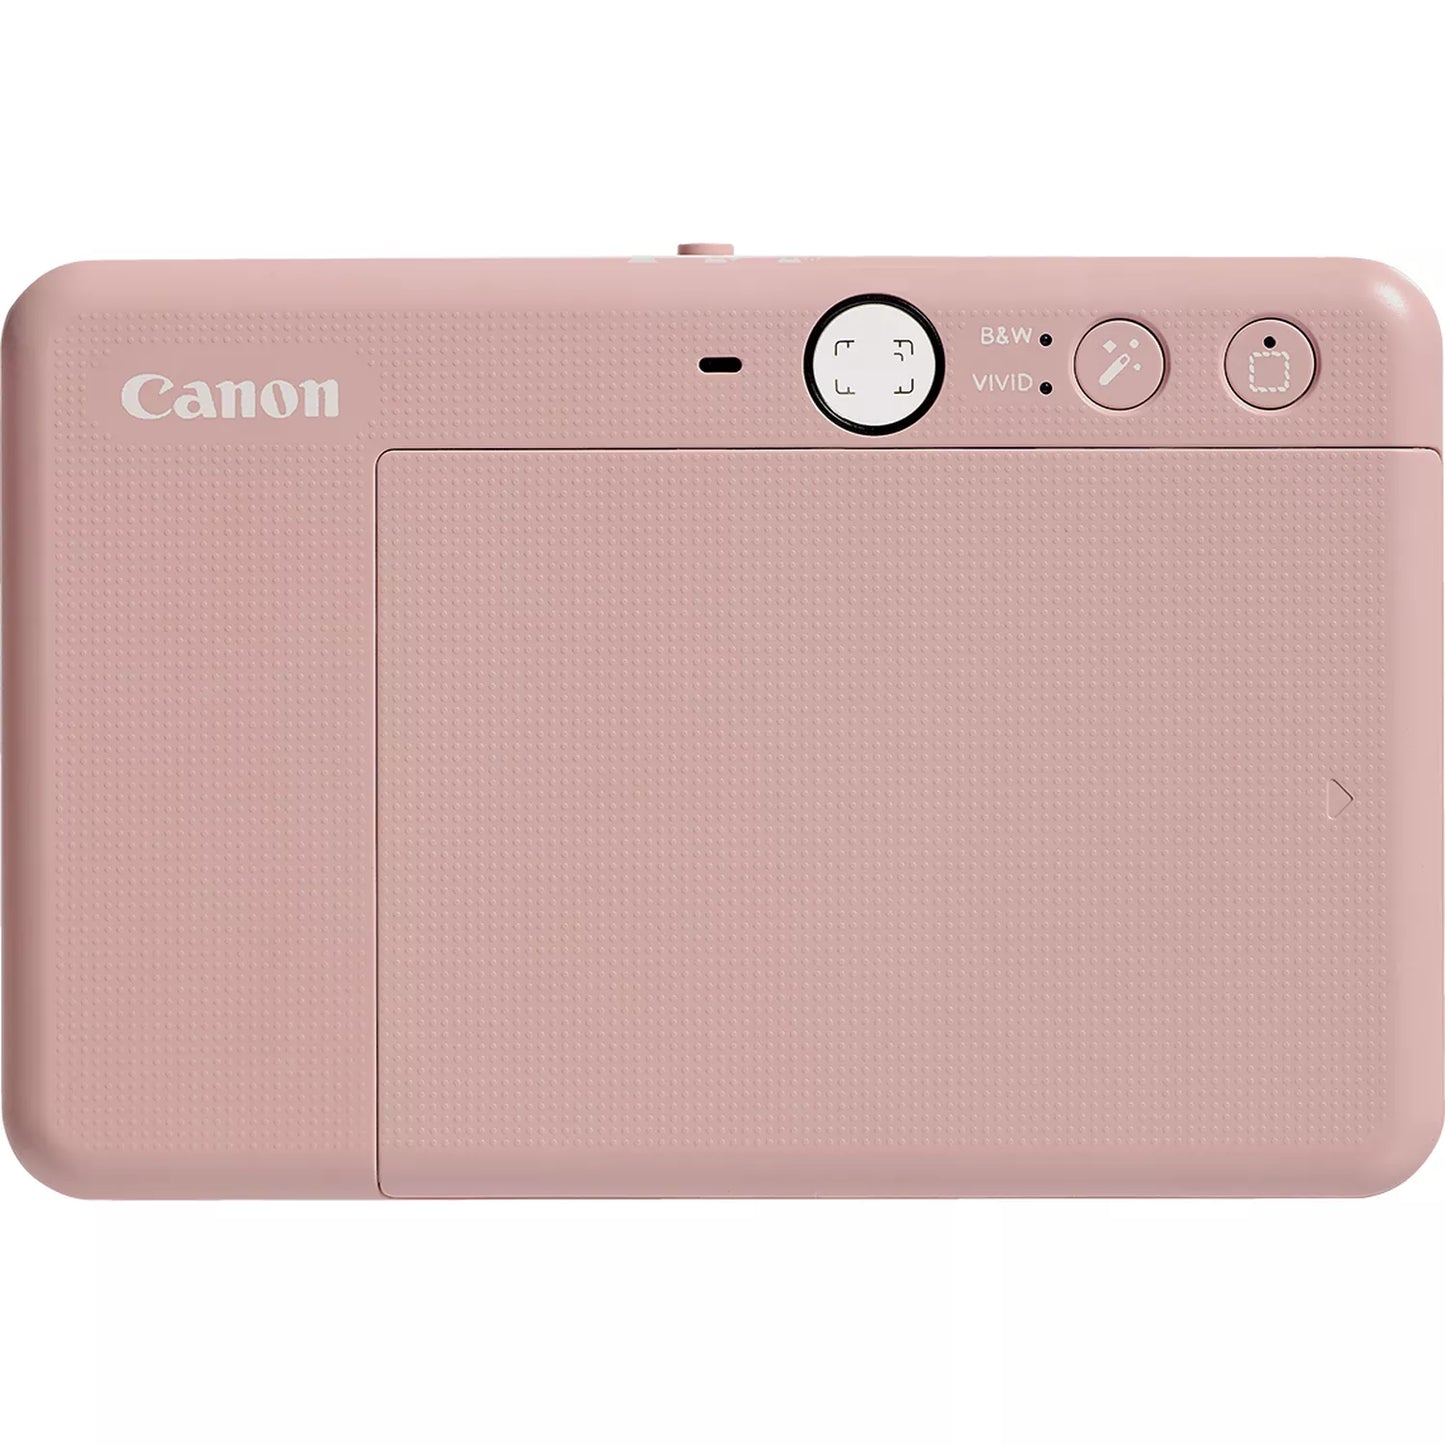 Canon Zoemini S2 Instant Camera Colour Photo Printer, Rose Gold